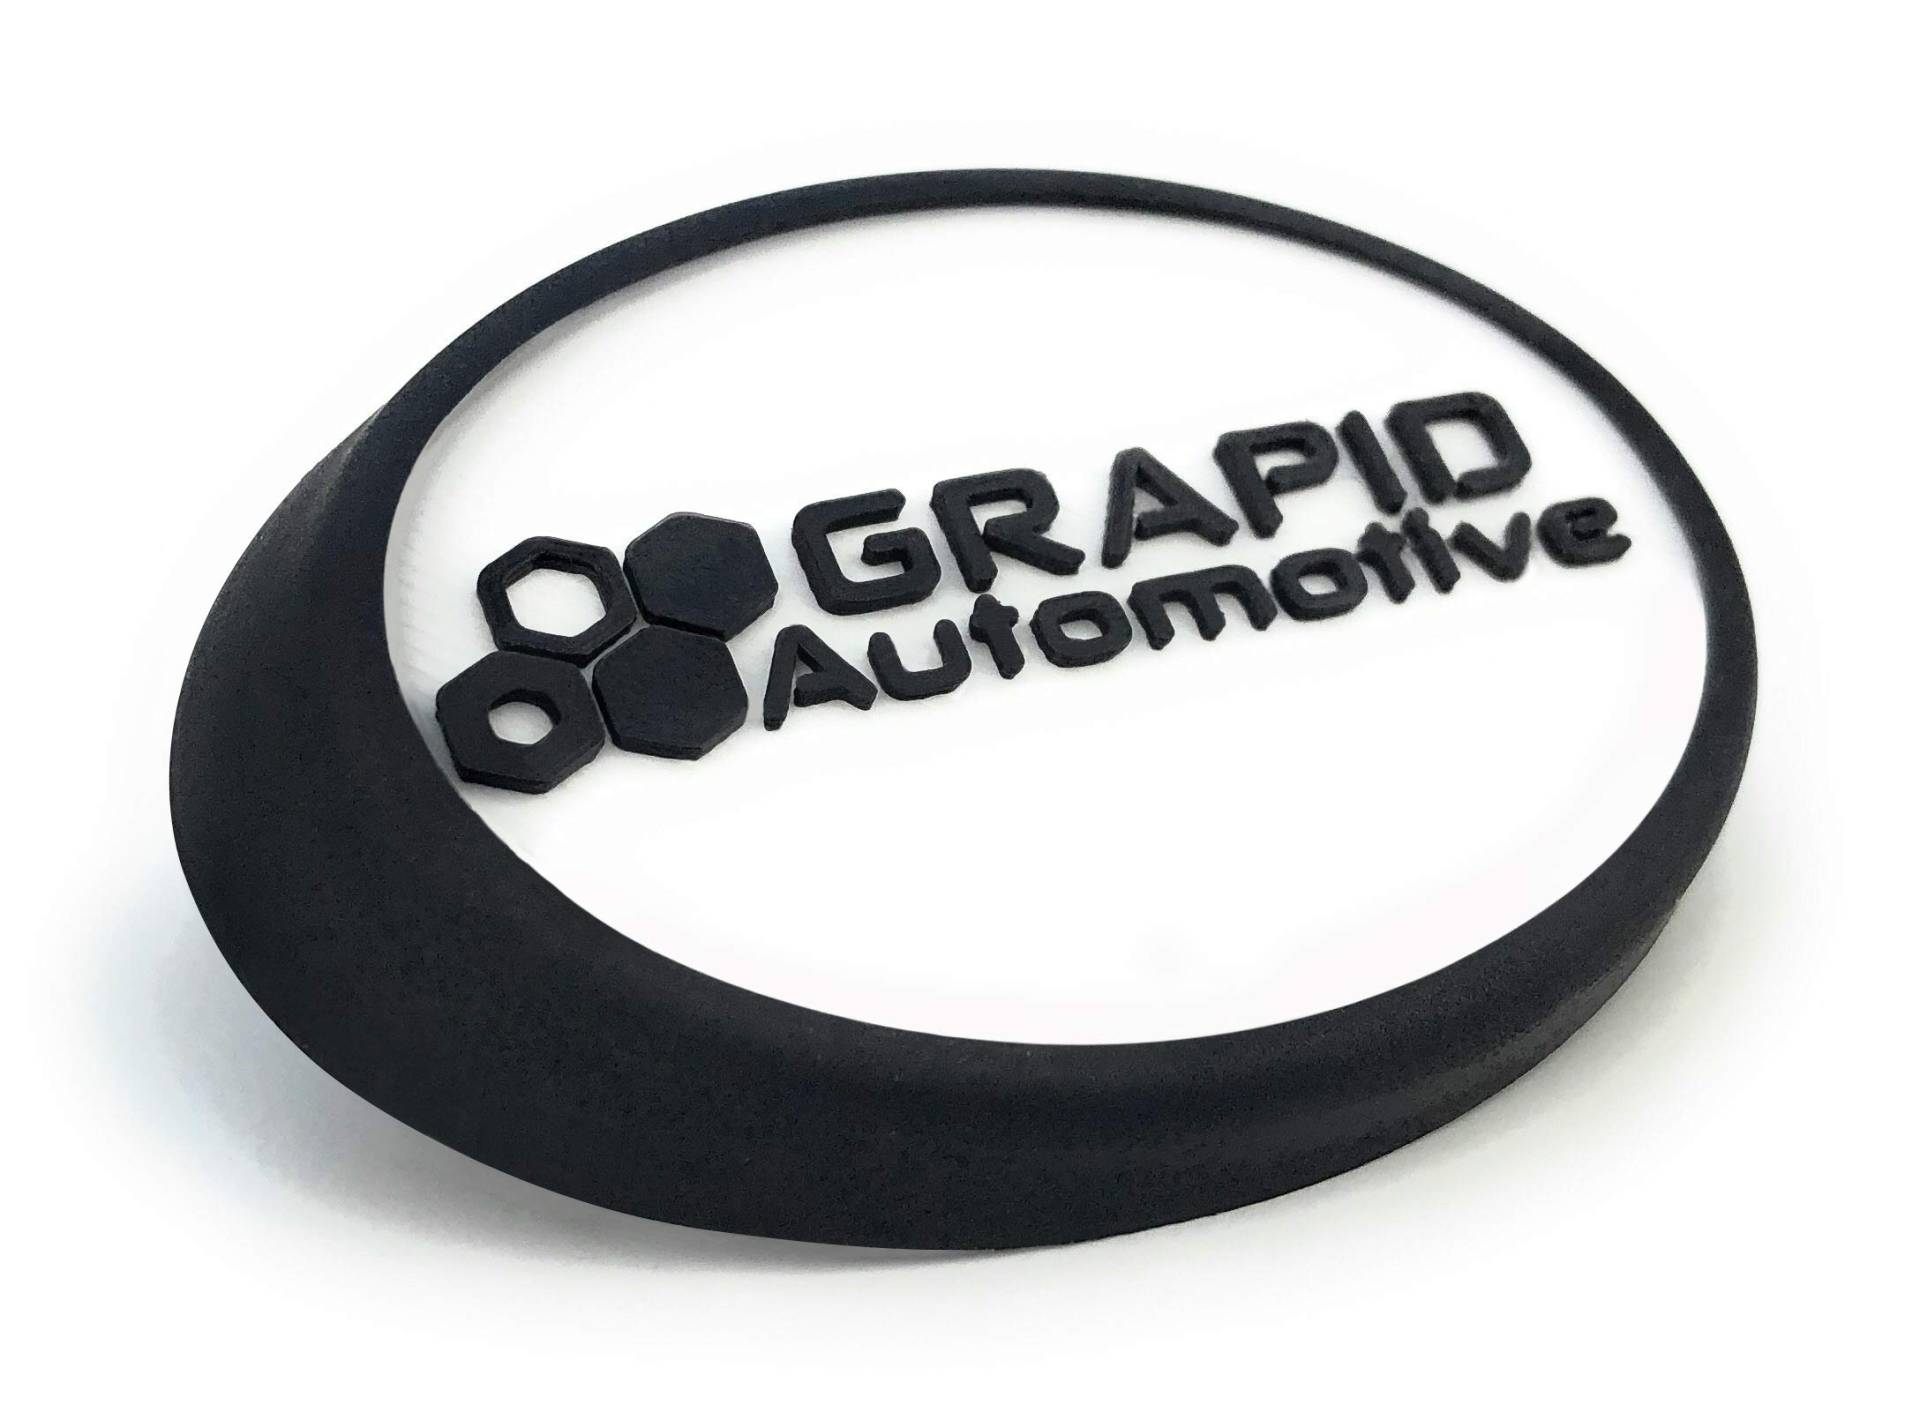 GRAPID Automotive® Antennenfuß Dichtung Reparatur Dichtung universell einsetzbar Reparatursatz (keine Demontage notwendig) von GRAPID Automotive